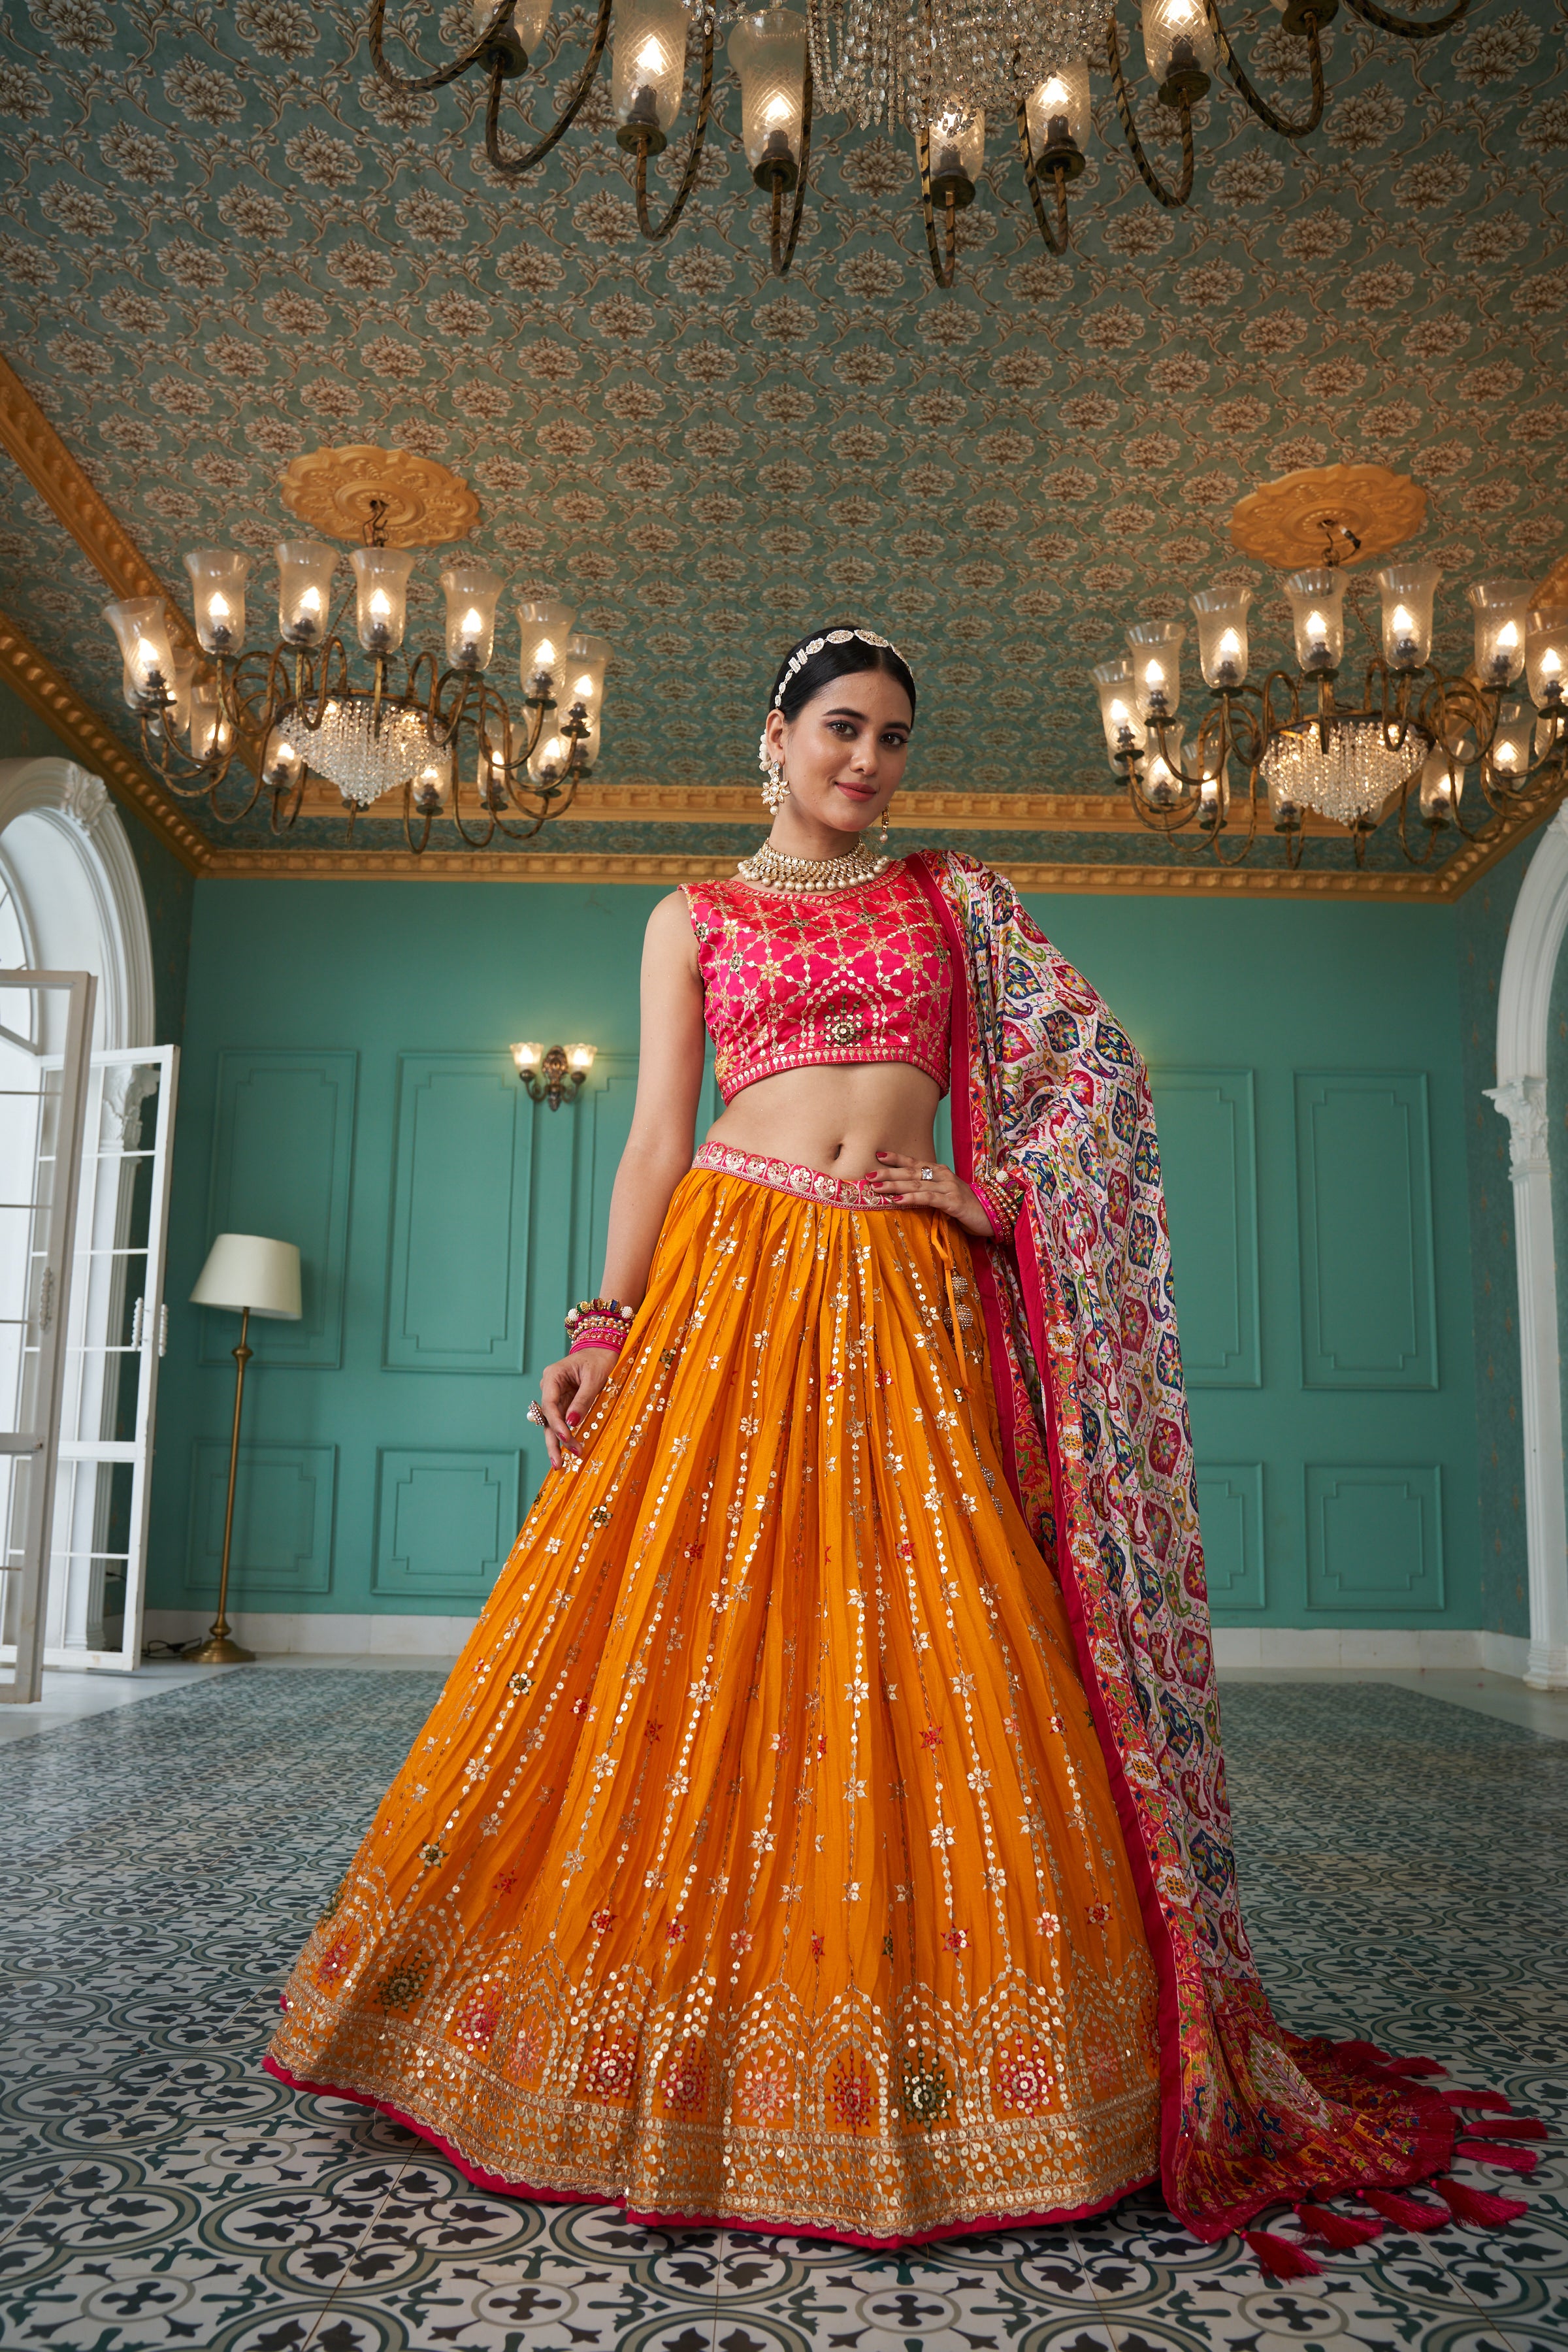 Indian Wedding Dress for Guest: 30+ Modern Wedding Outfit Ideas for guests  | Indian wedding dress modern, Modern indian wedding, Indian wedding dress